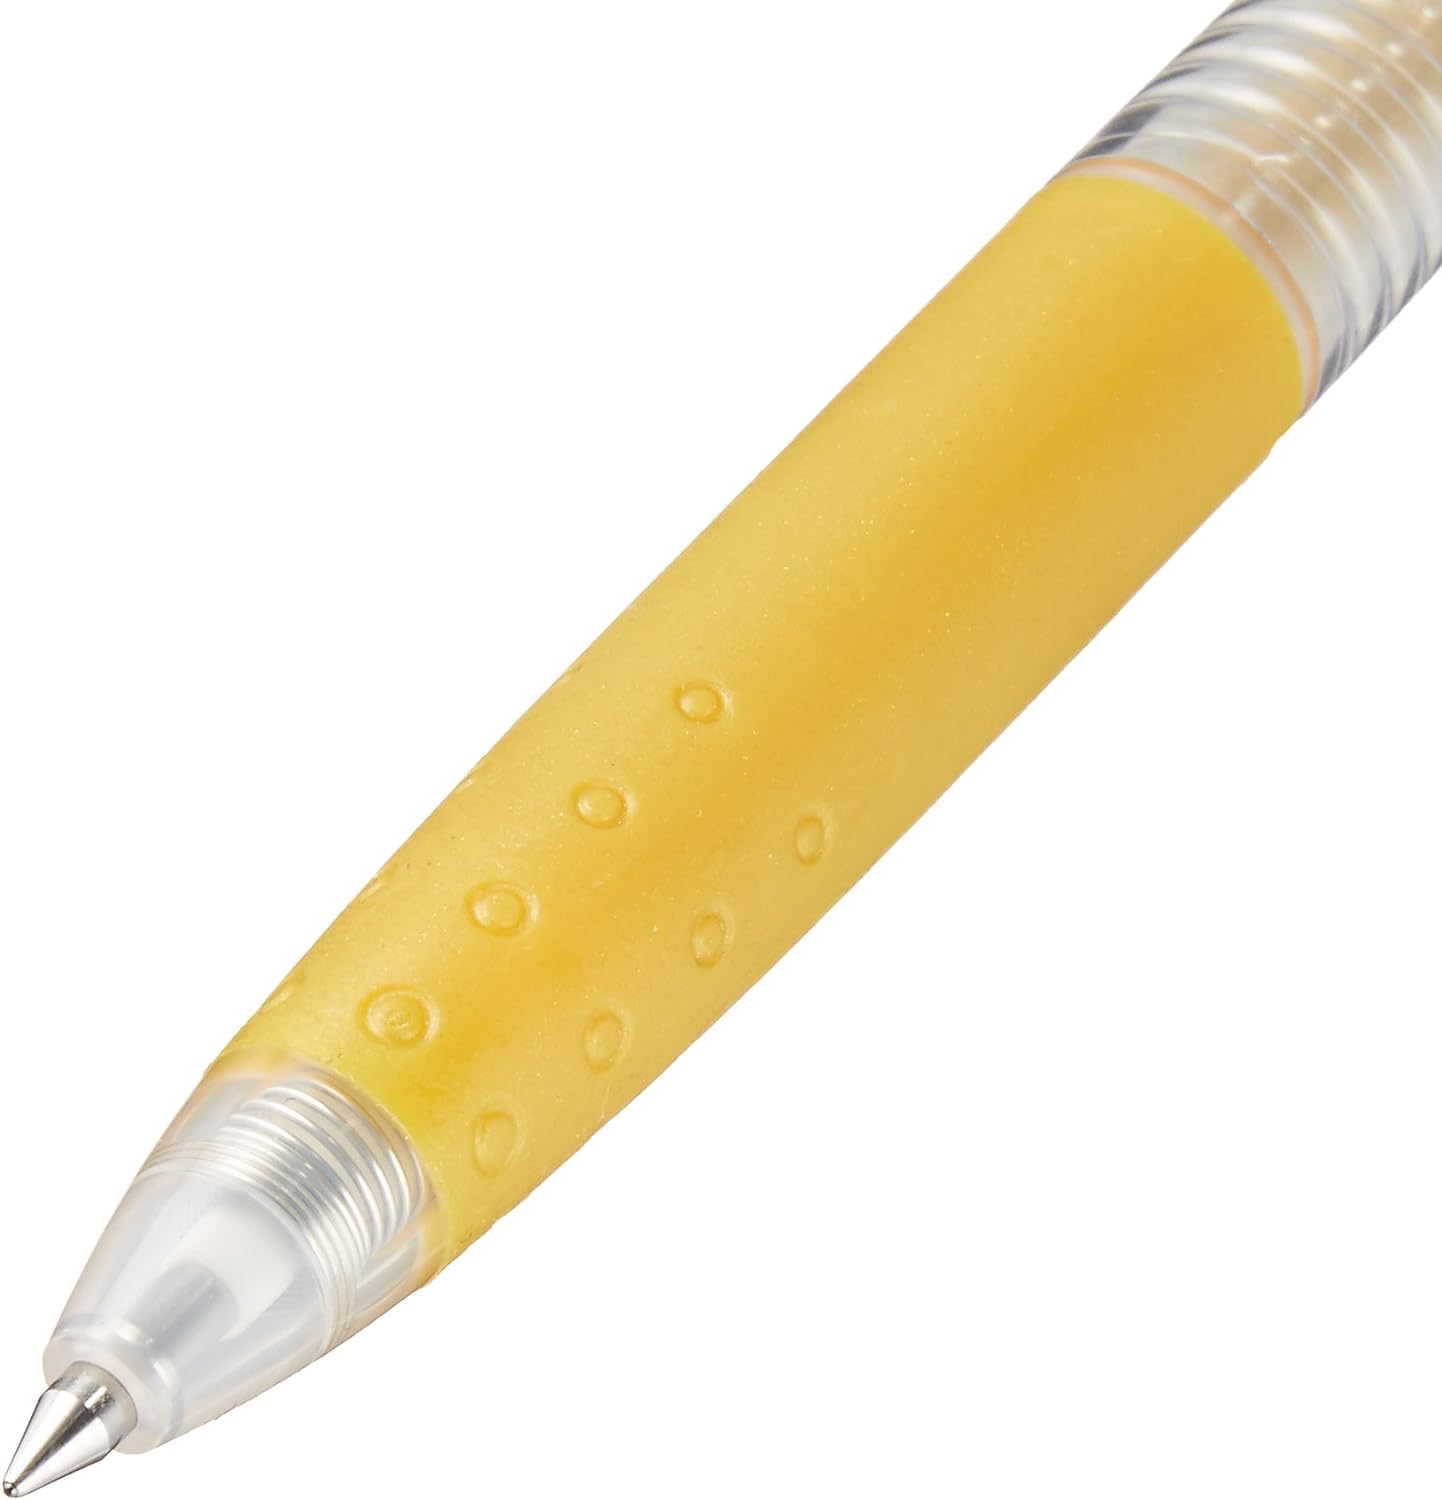 Pilot Juice Gel Ink Ballpoint Pen, 0.5mm, 6 Metallic Colors